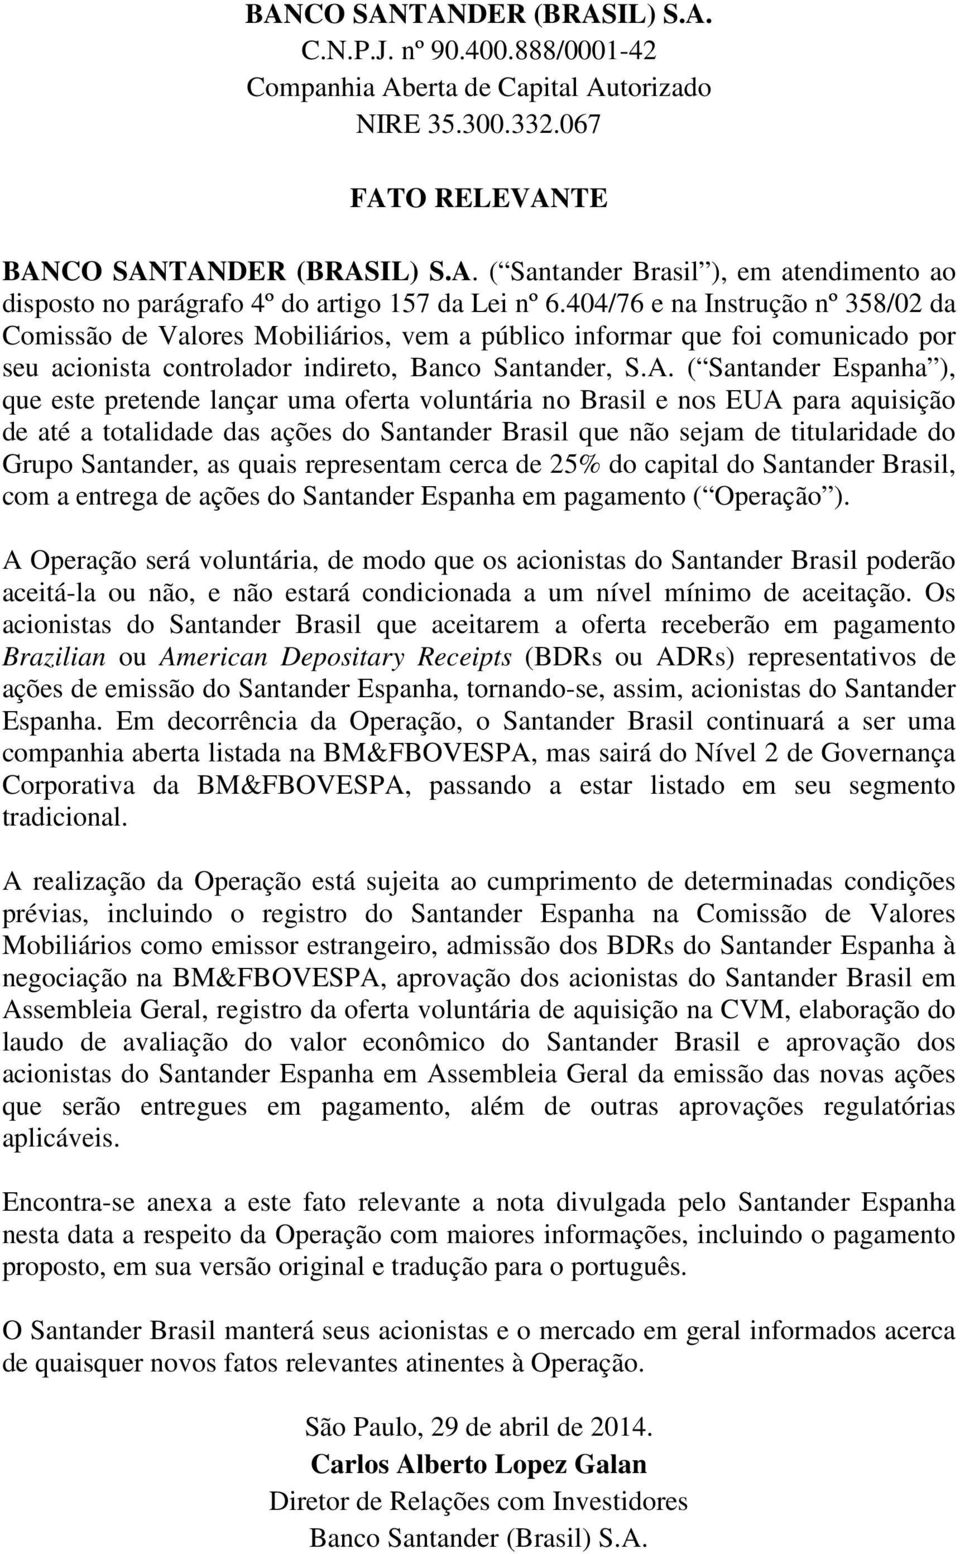 ( Santander Espanha ), que este pretende lançar uma oferta voluntária no Brasil e nos EUA para aquisição de até a totalidade das ações do Santander Brasil que não sejam de titularidade do Grupo